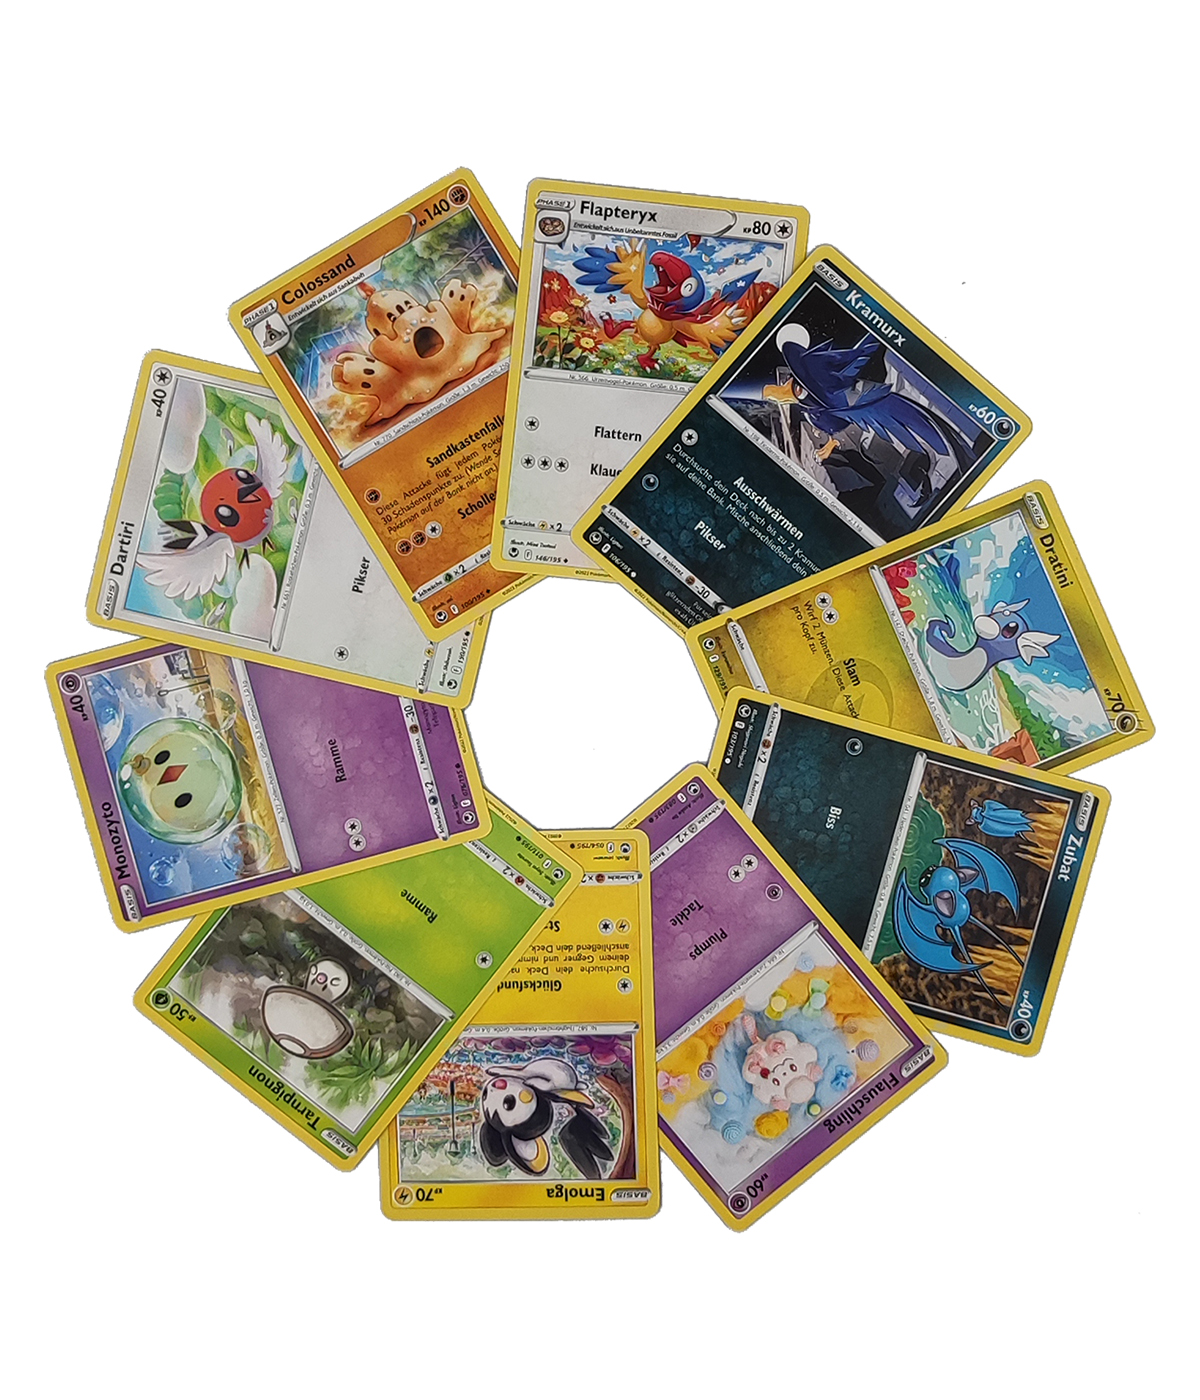 Pokémon 2er Mix-Bundle "Entwicklungen in Paldea + Silberne Sturmwinde"